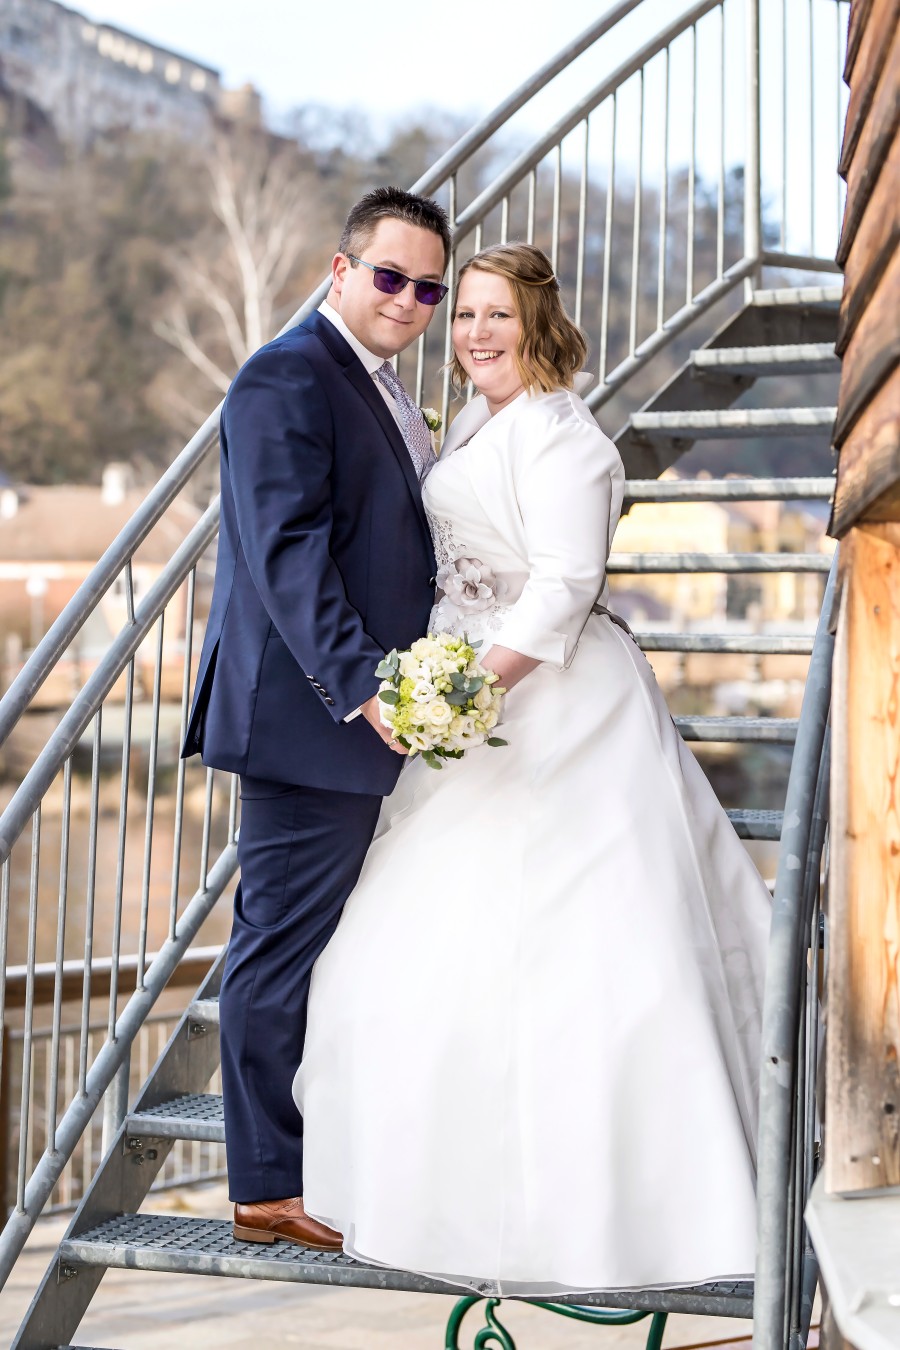 01 Liebhart - Ott: Katja Ott und
Christoph Liebhart,
geheiratet am 19.1.2019 im Rathaussaal des Gemeindeamtes